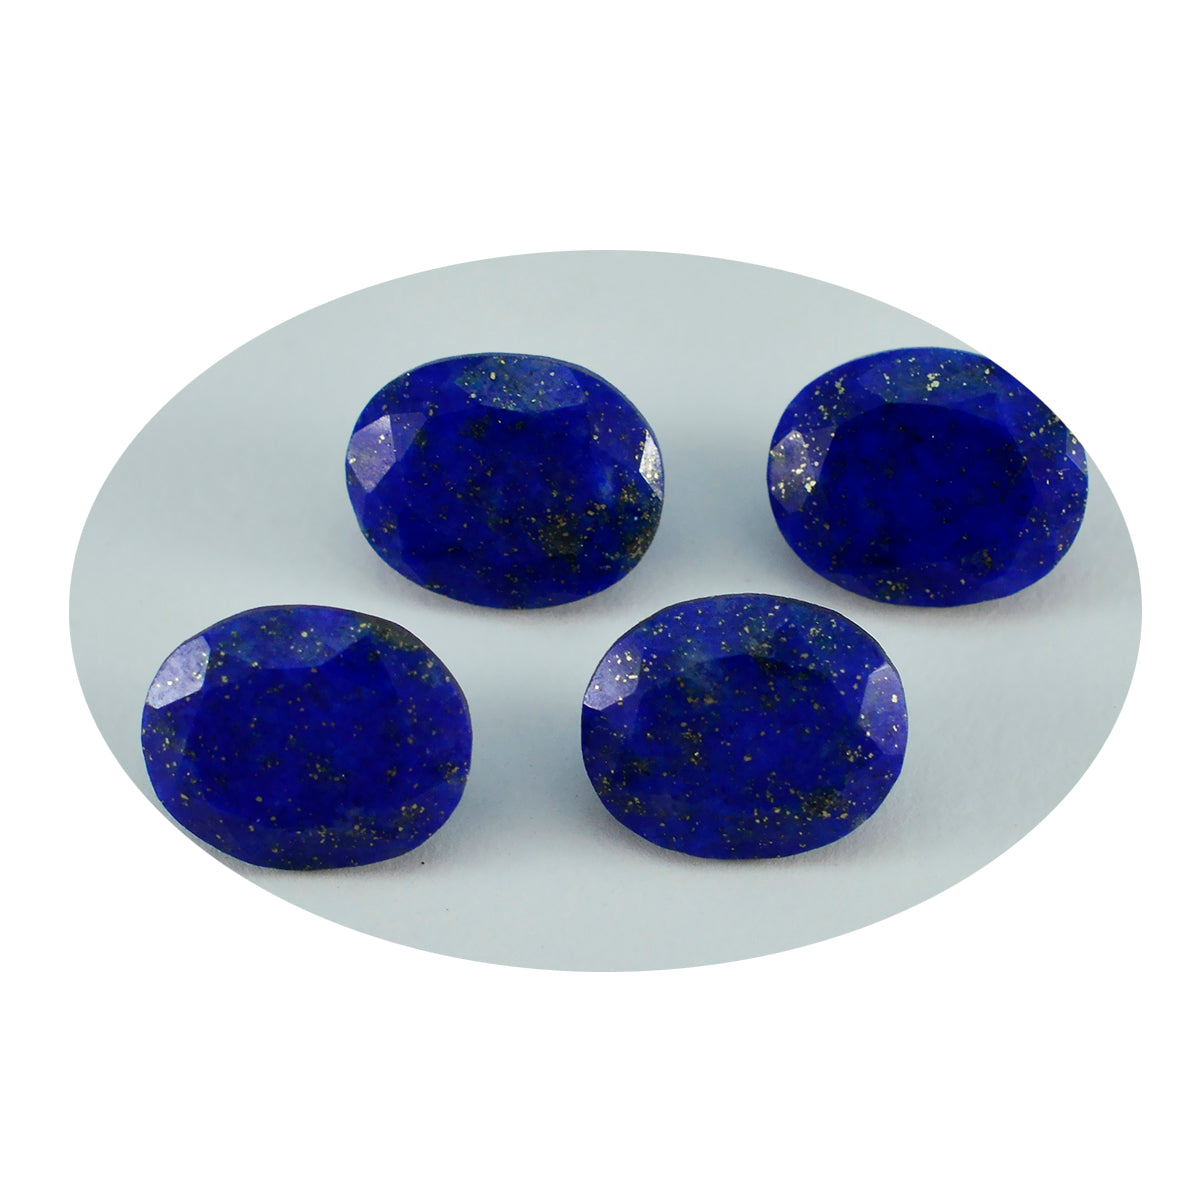 Riyogems 1 pièce véritable lapis lazuli bleu à facettes 10x12mm forme ovale qualité étonnante pierre en vrac